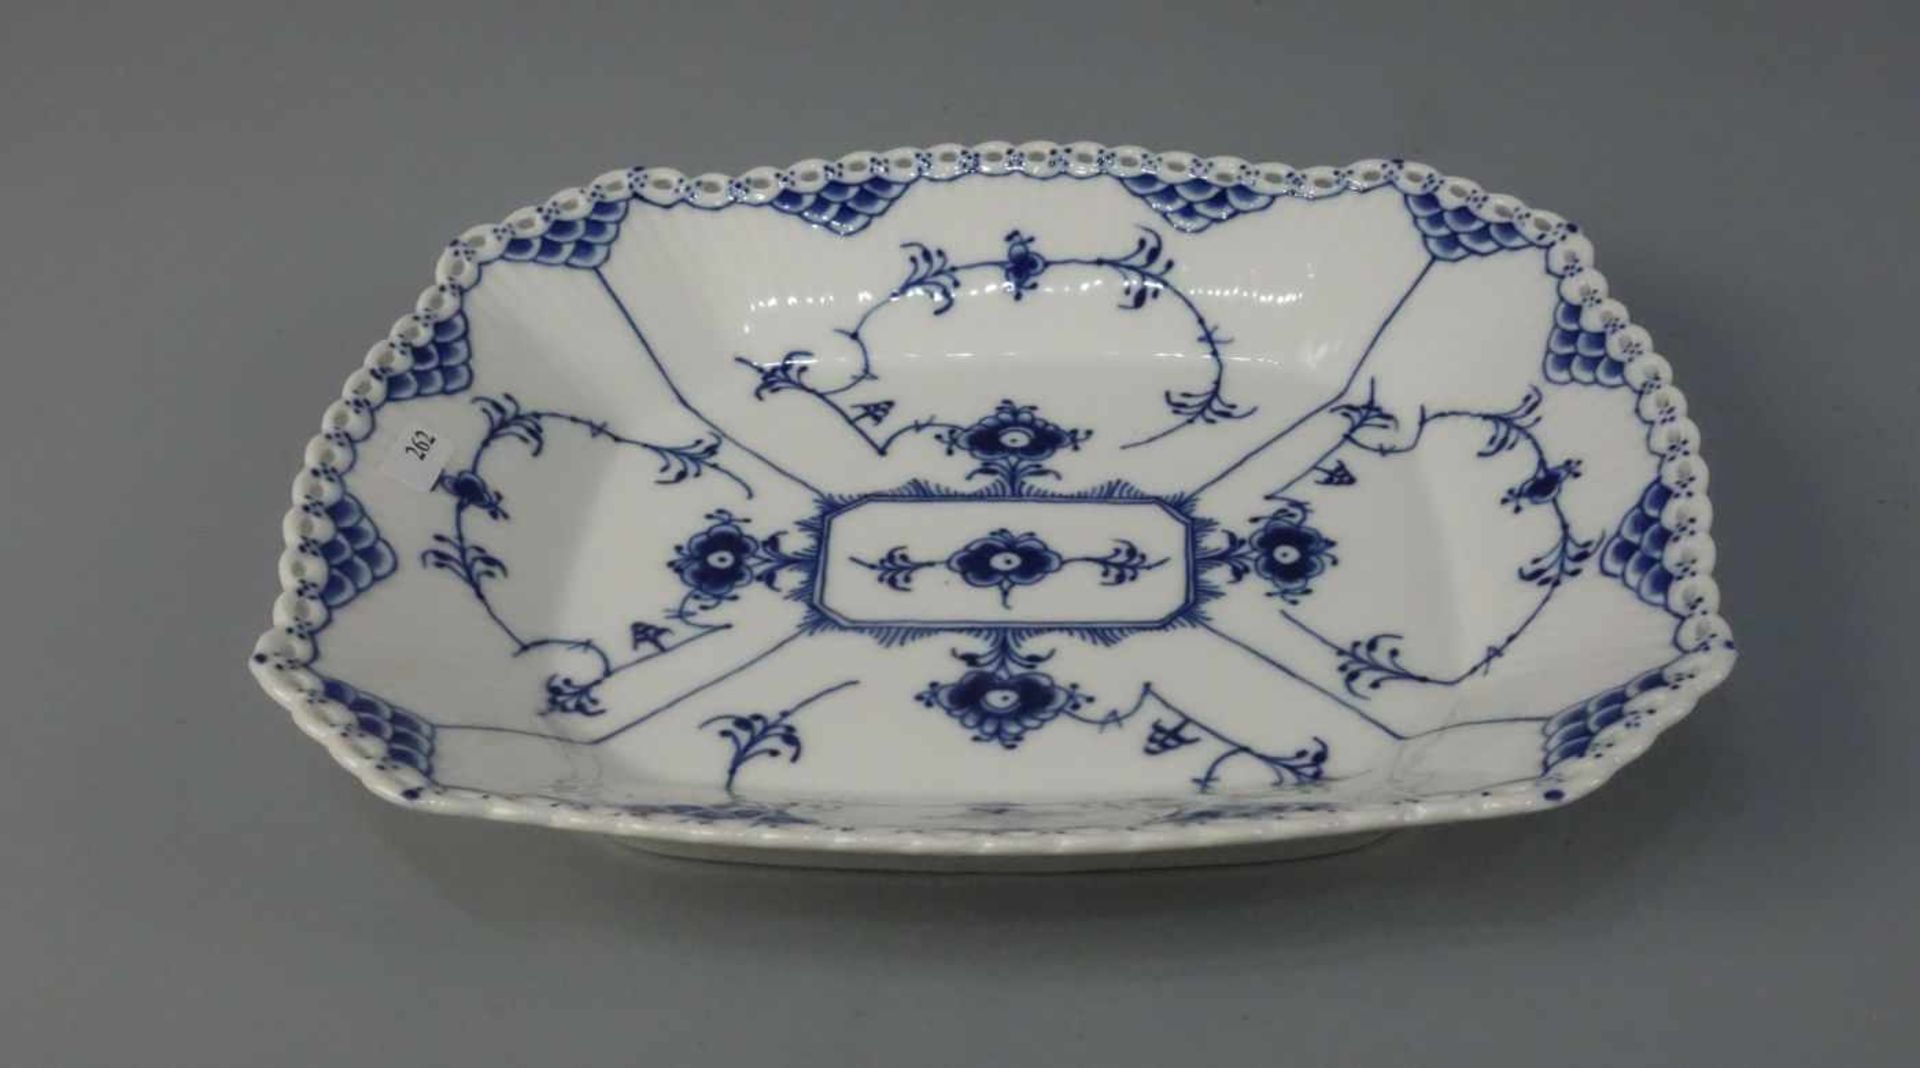 SCHALE / bowl, "MUSSELMALET VOLLSPITZE", Porzellan, Manufaktur Royal Copenhagen, Dänemark, Marke - Bild 2 aus 4